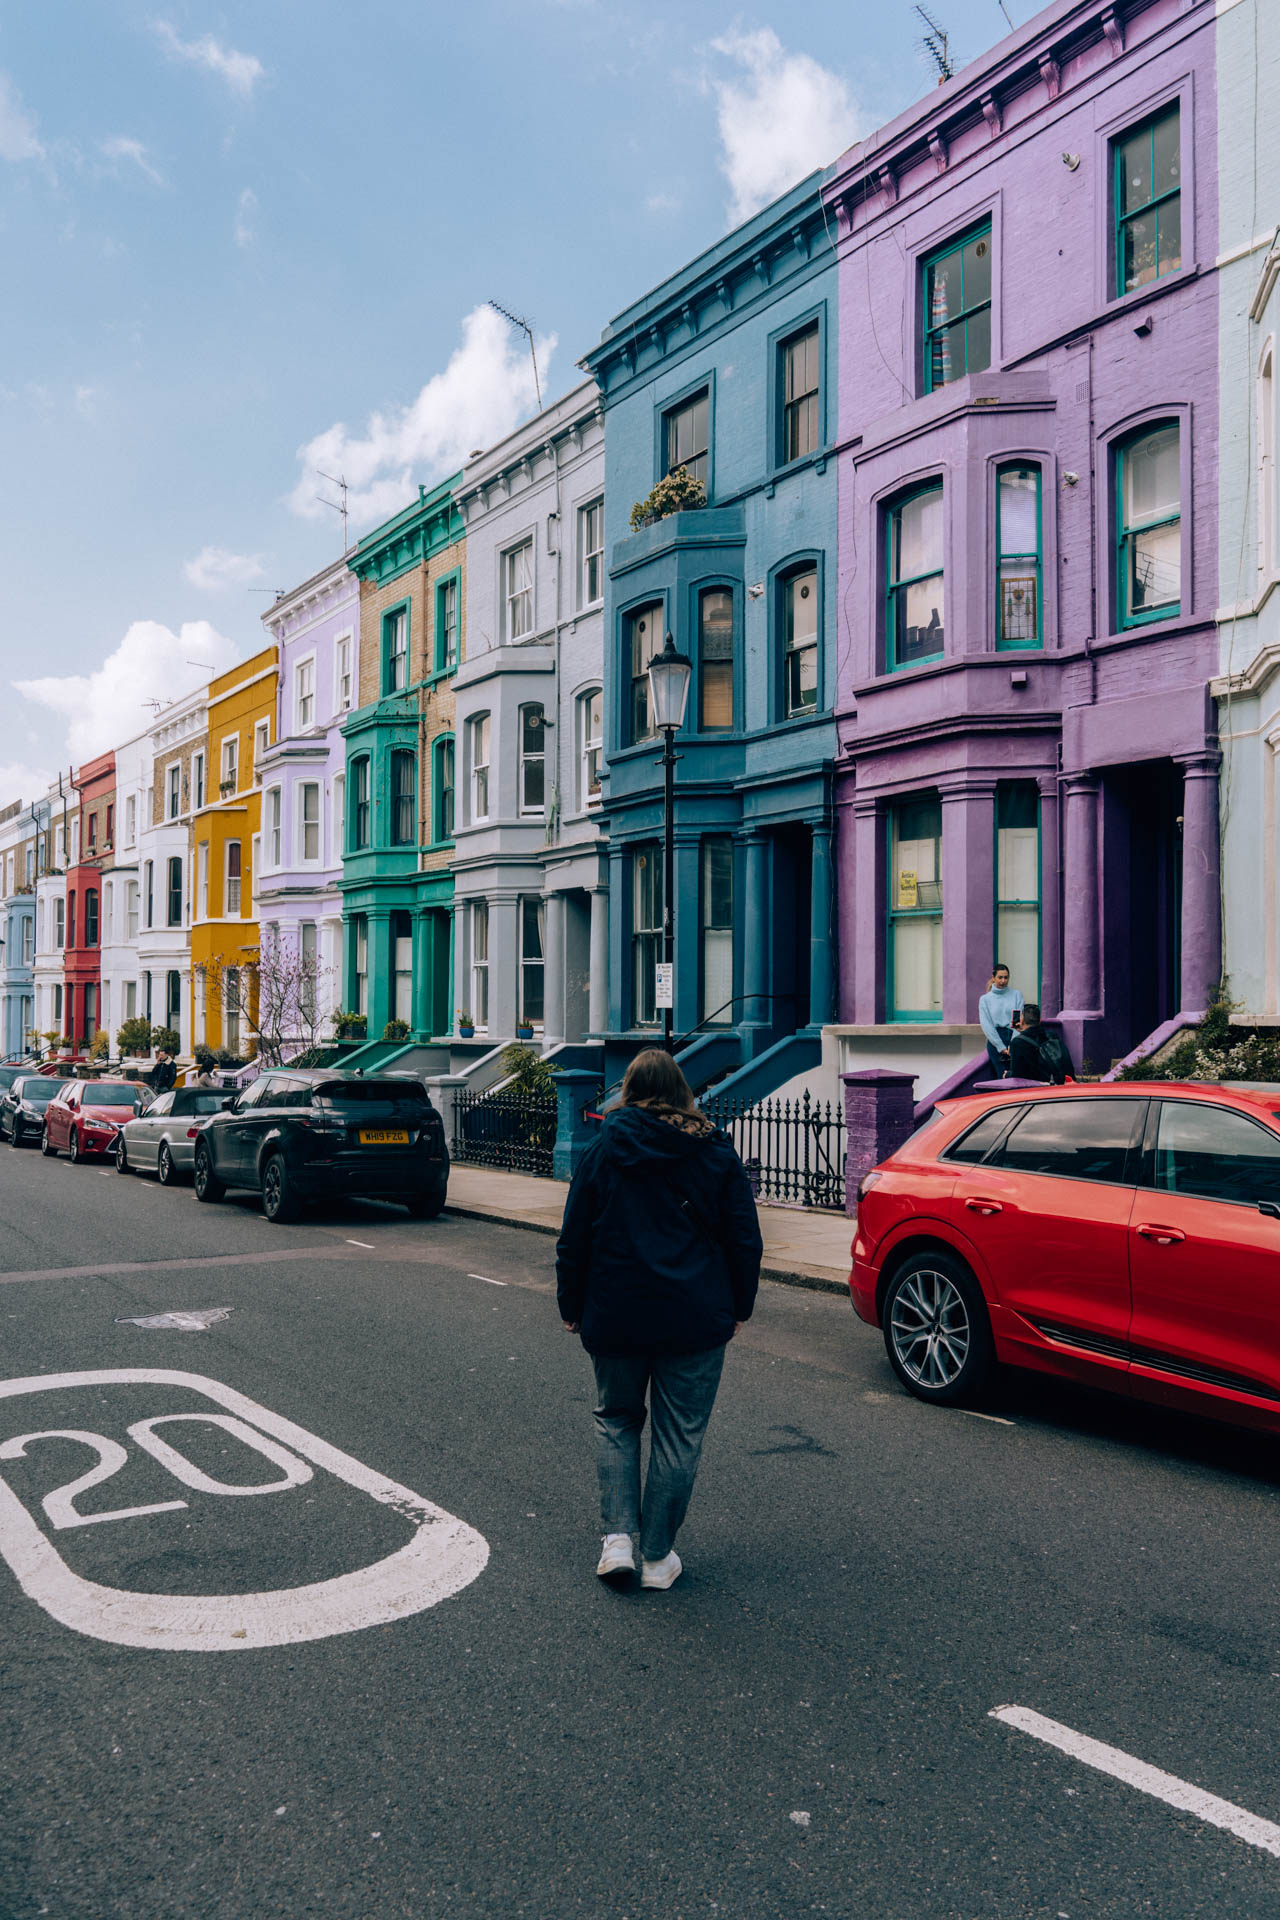 Kolorowa uliczka w dzielnicy Notting Hill